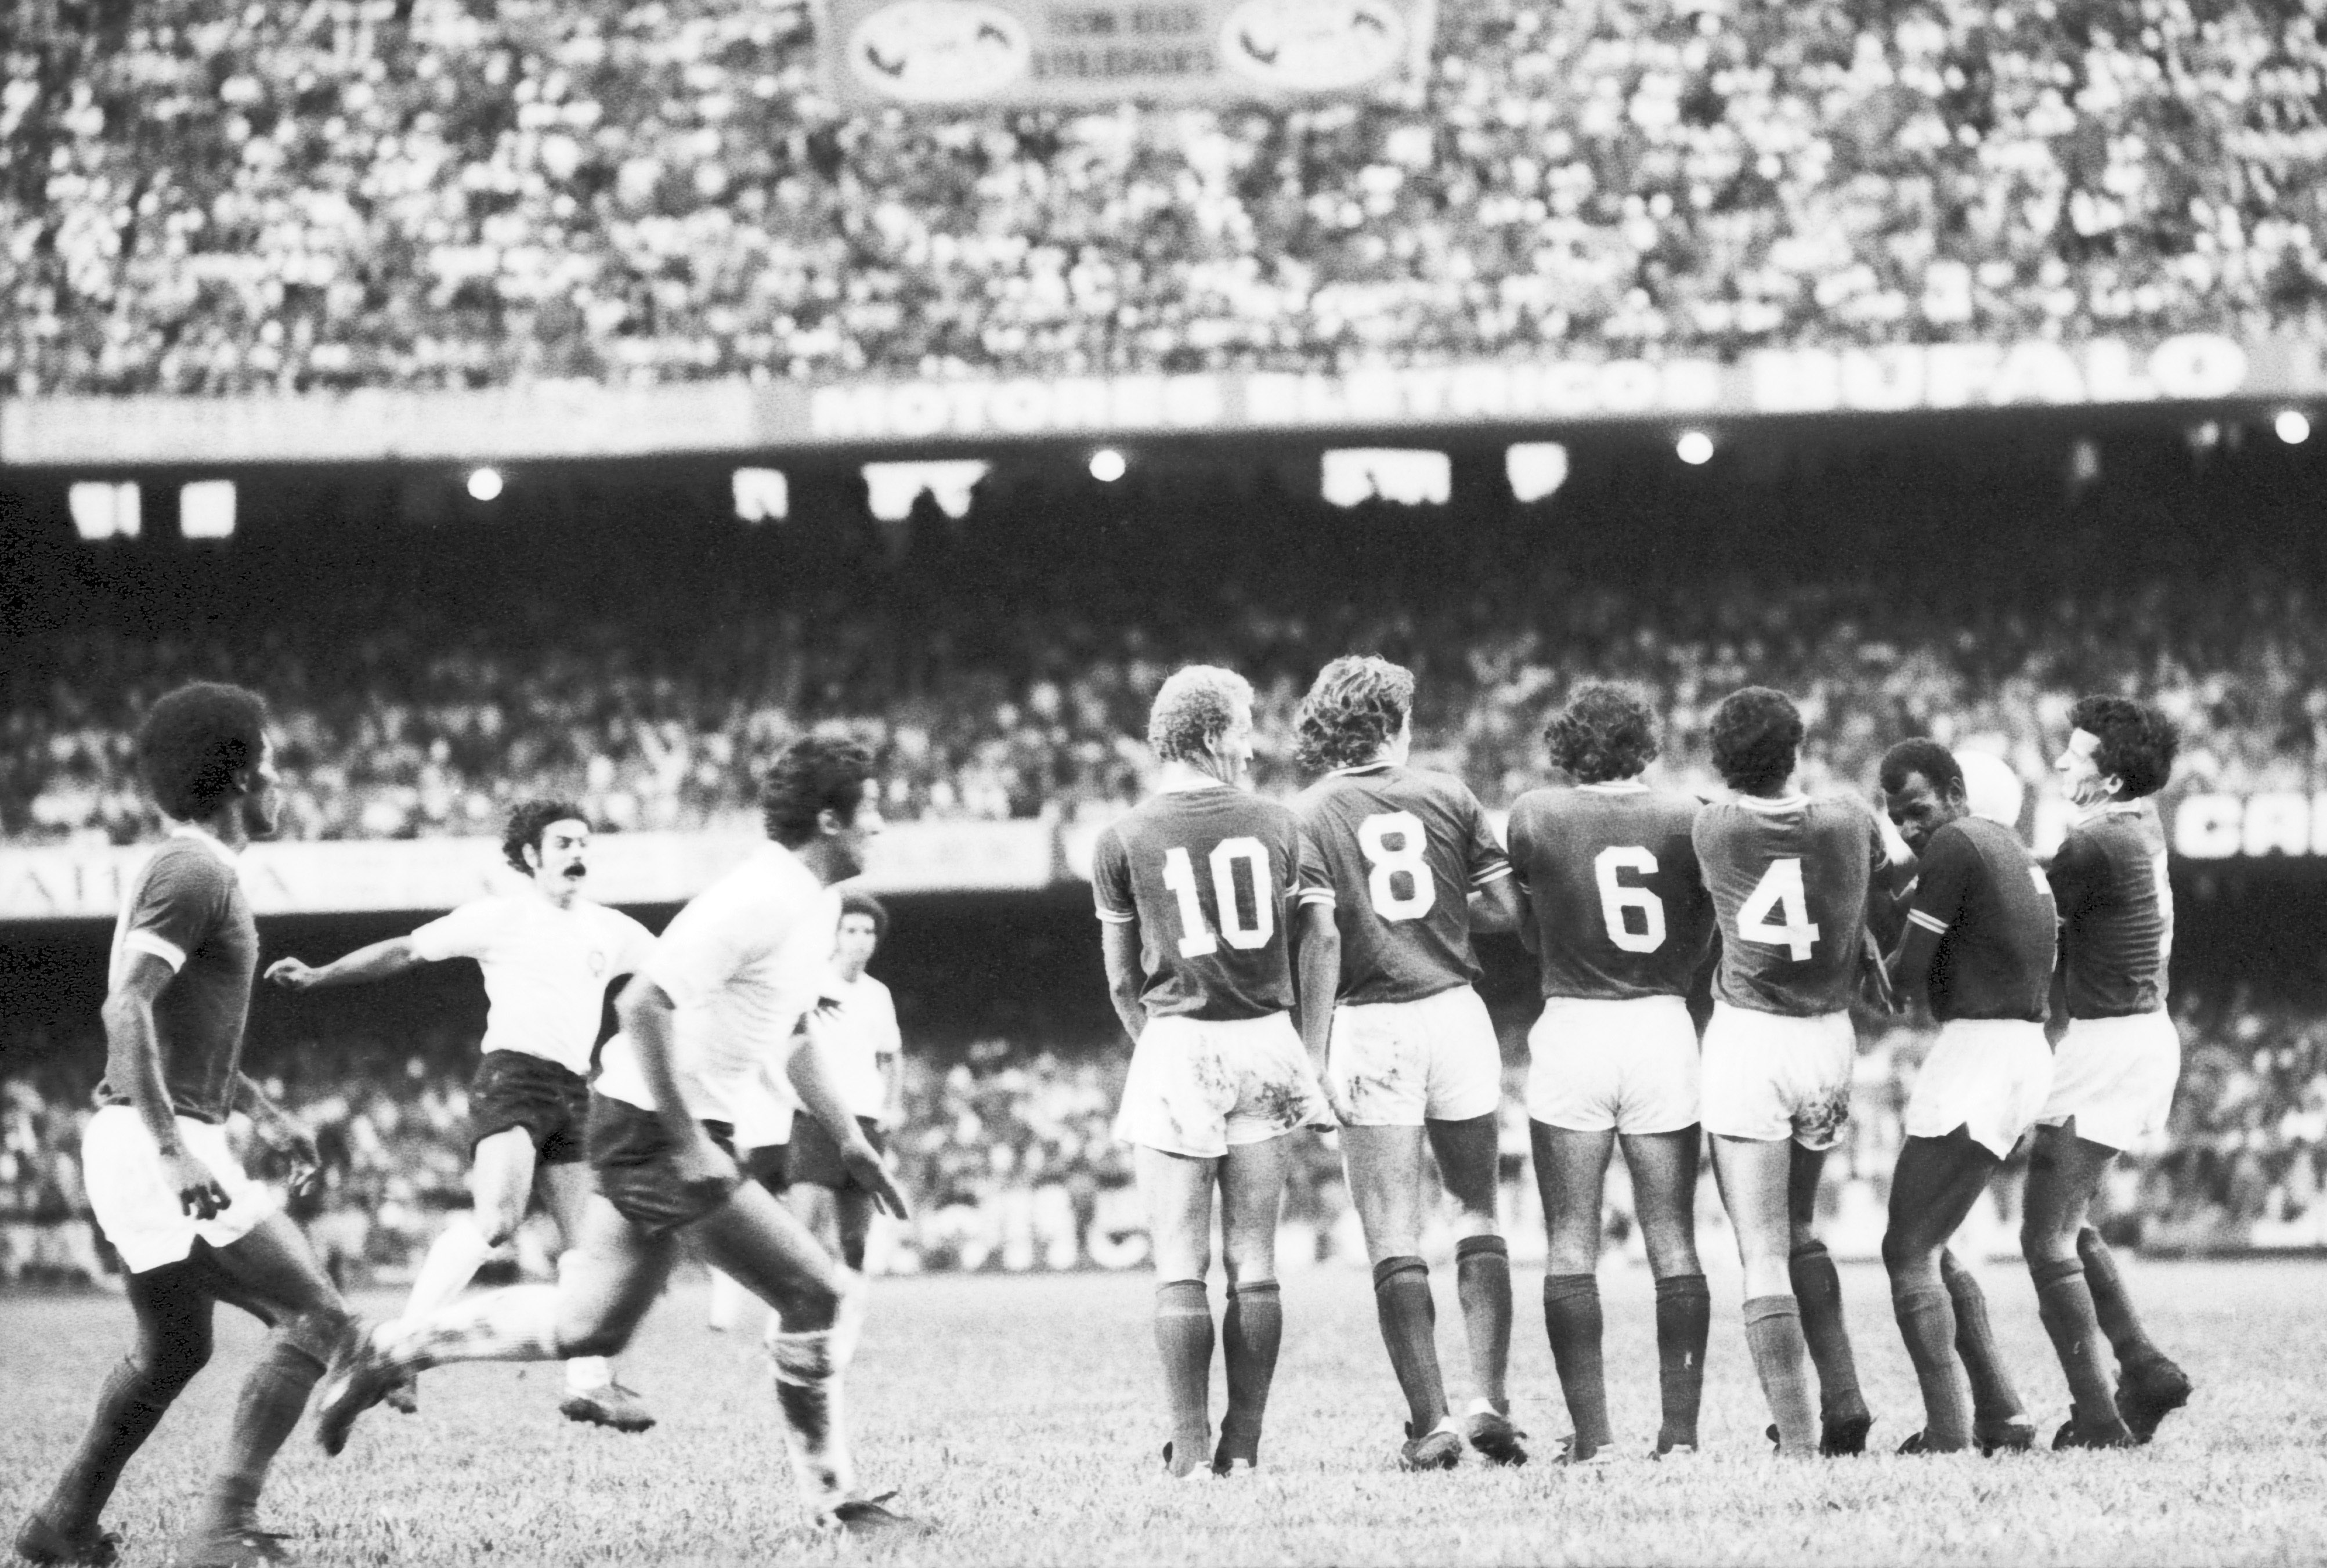 CobranÁa de falta no jogo entre Corinthias e Palmeiras, pelo Campeonato Paulista de 1974.